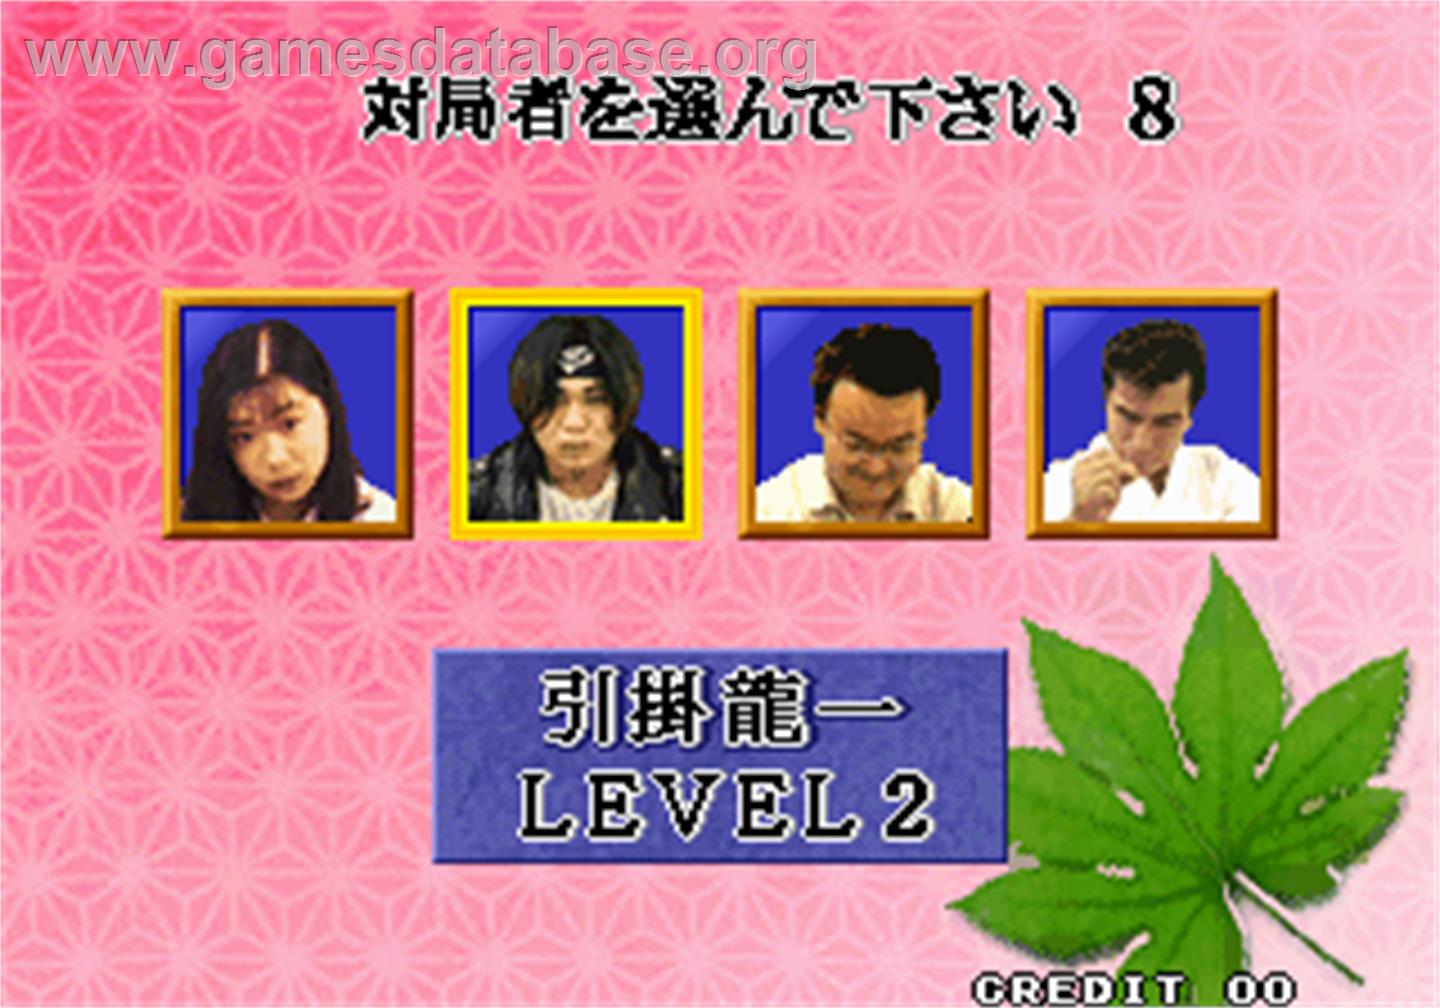 Syougi No Tatsujin - Master of Syougi - Arcade - Artwork - Select Screen